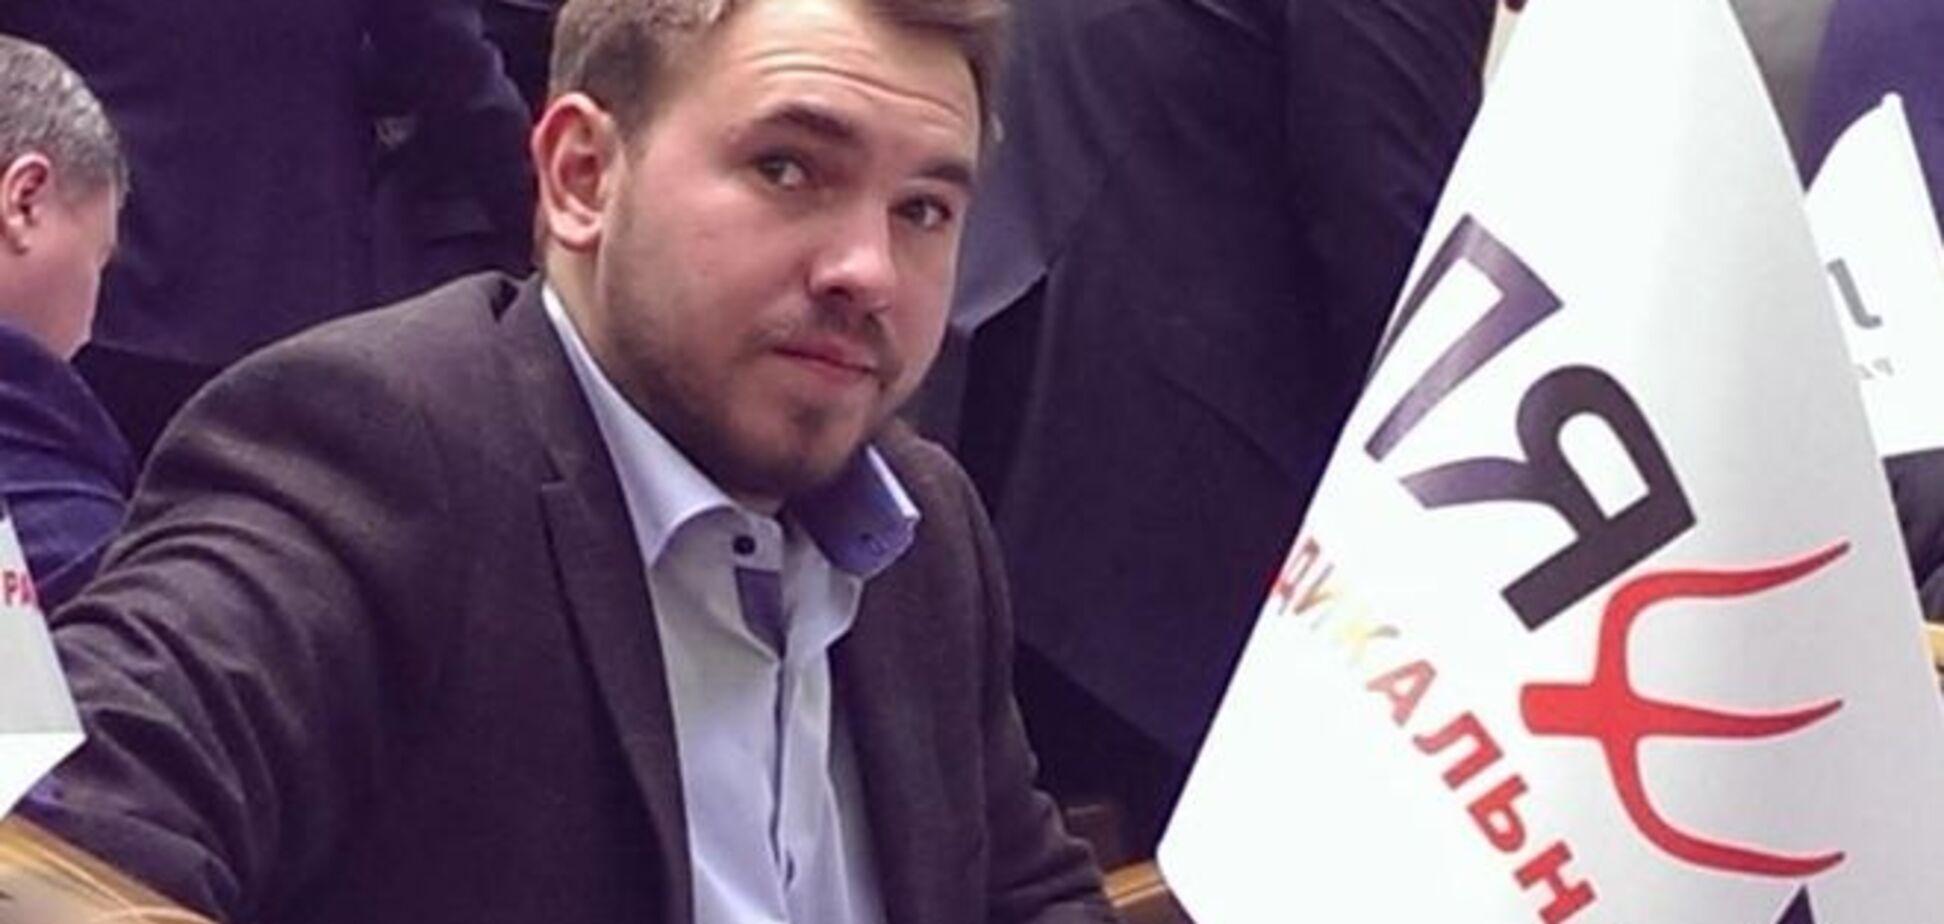 ЗМІ дізналися ім'я депутата, якого хоче заарештувати Шокін